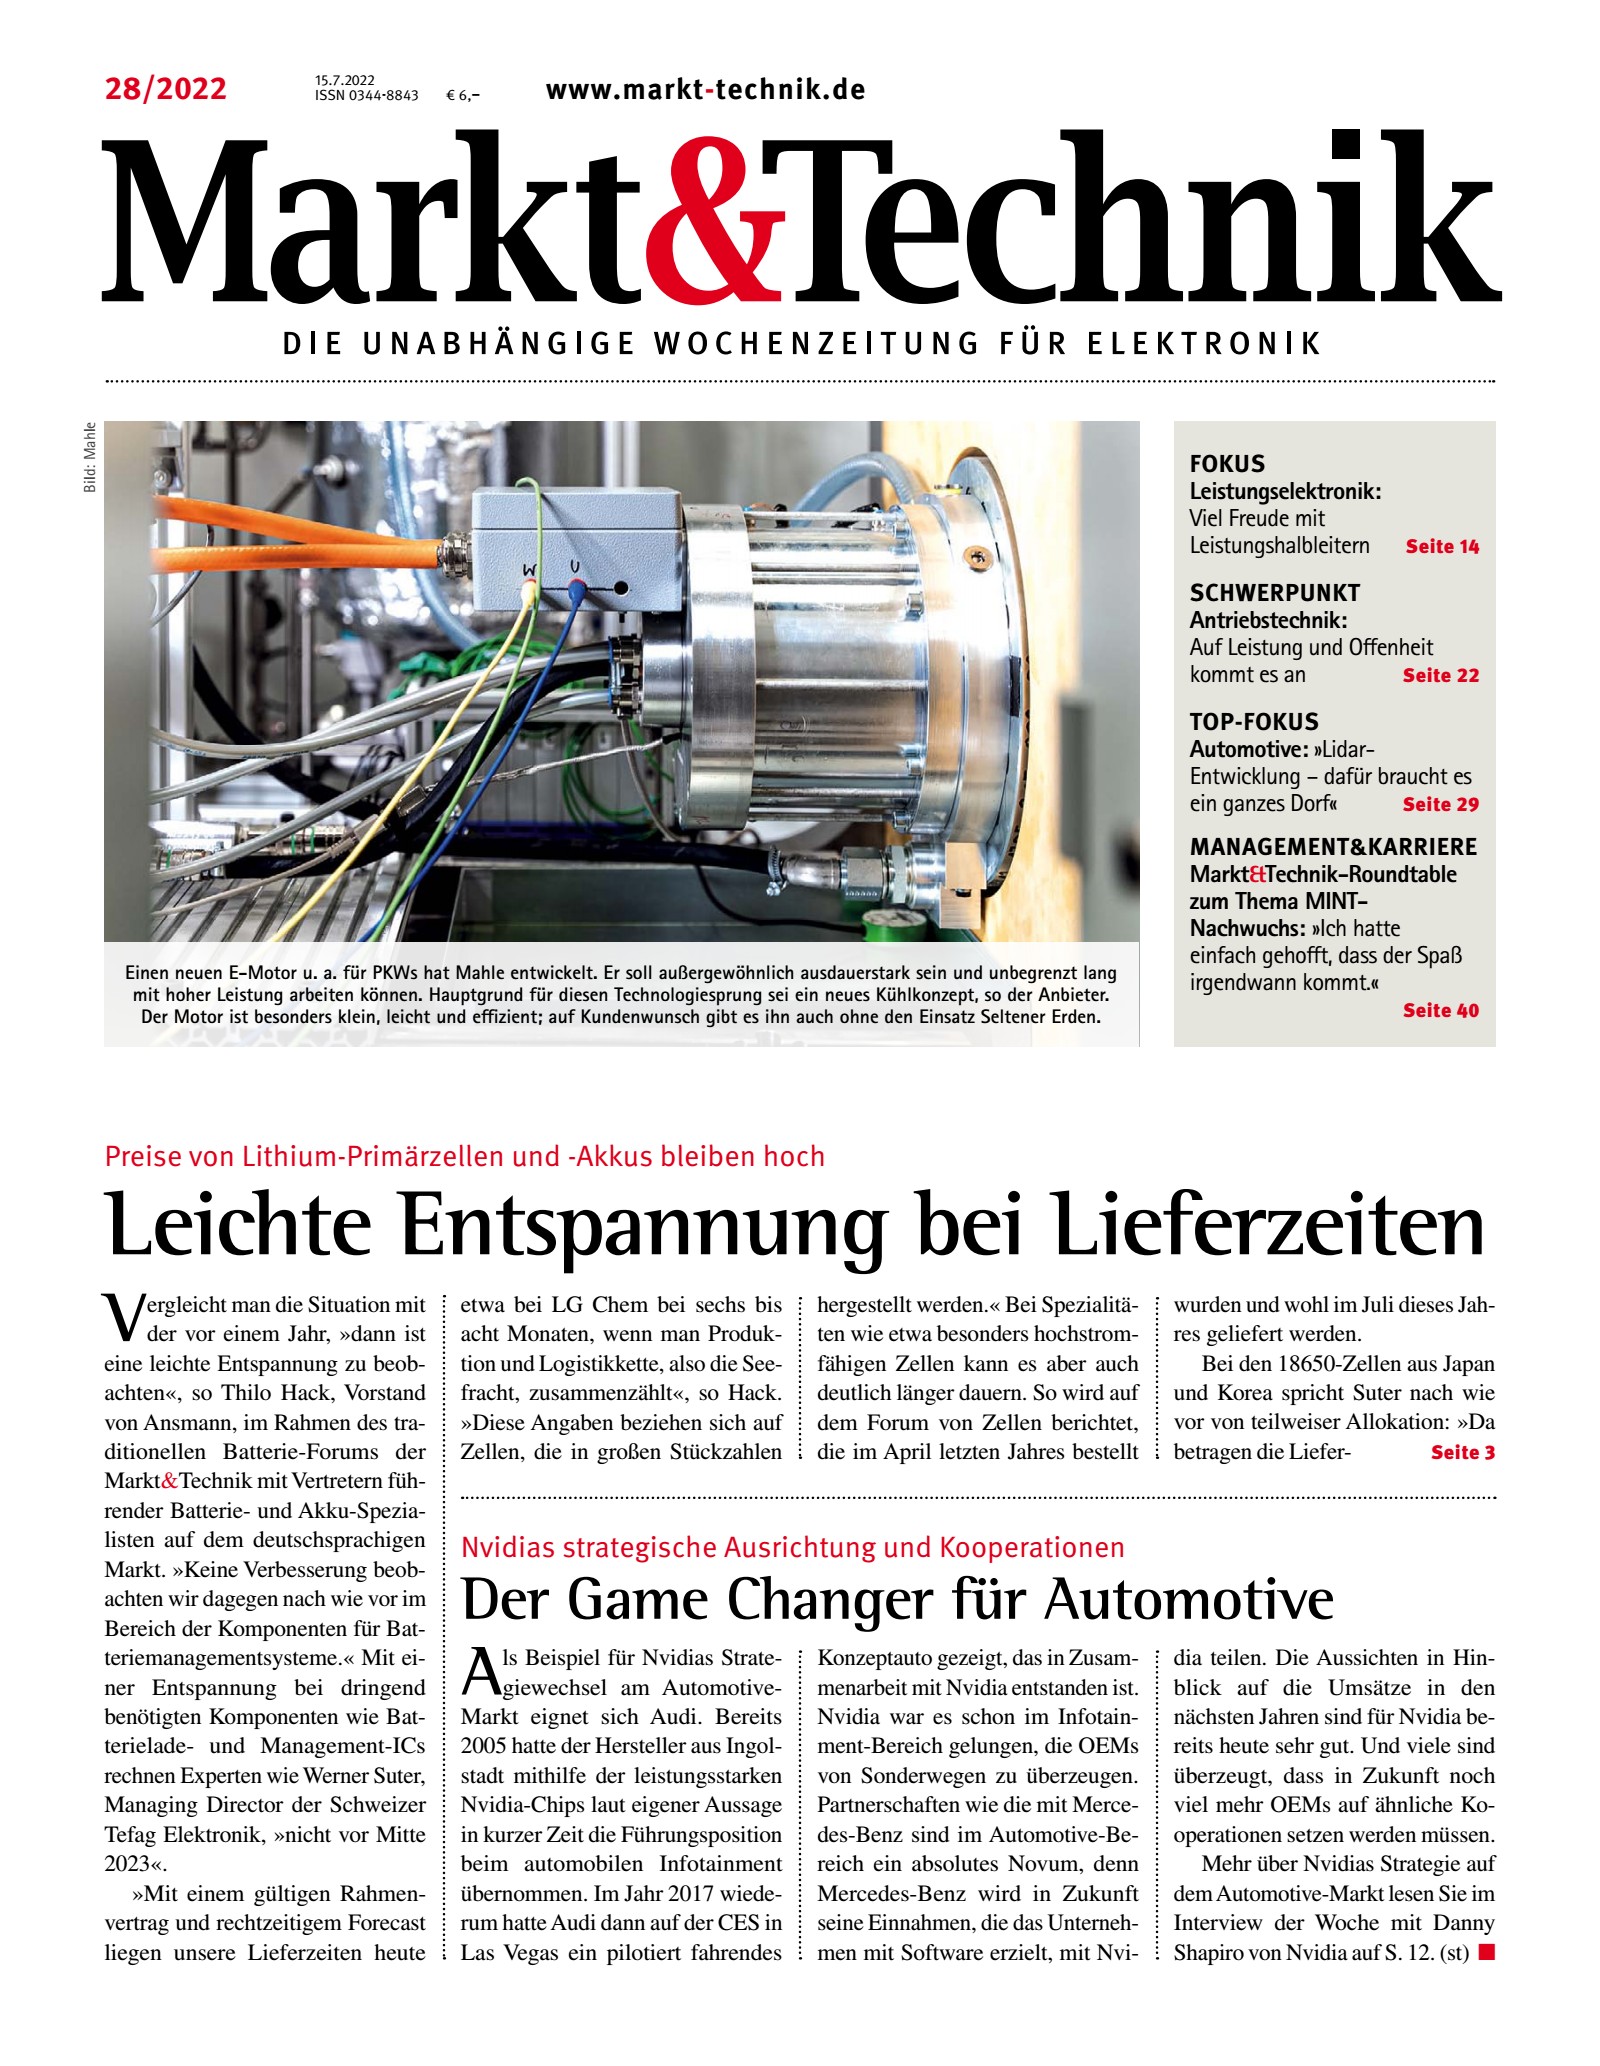 Markt&Technik 28/2022 Digital